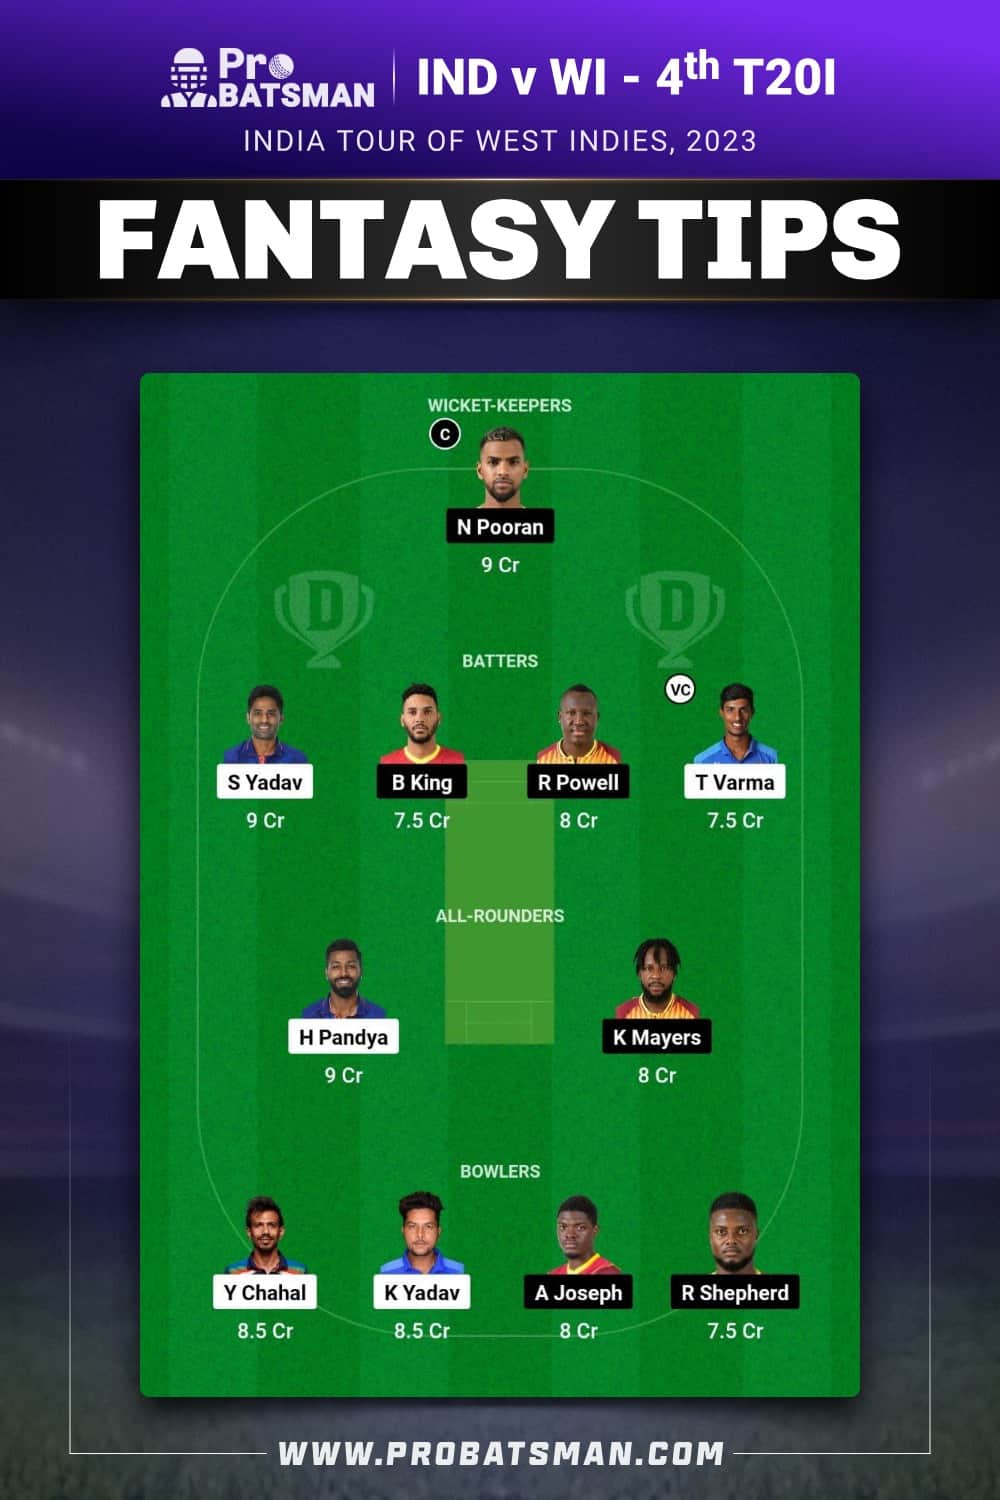 IND vs WI Dream11 Prediction for 4th T20I - Fantasy Team 1